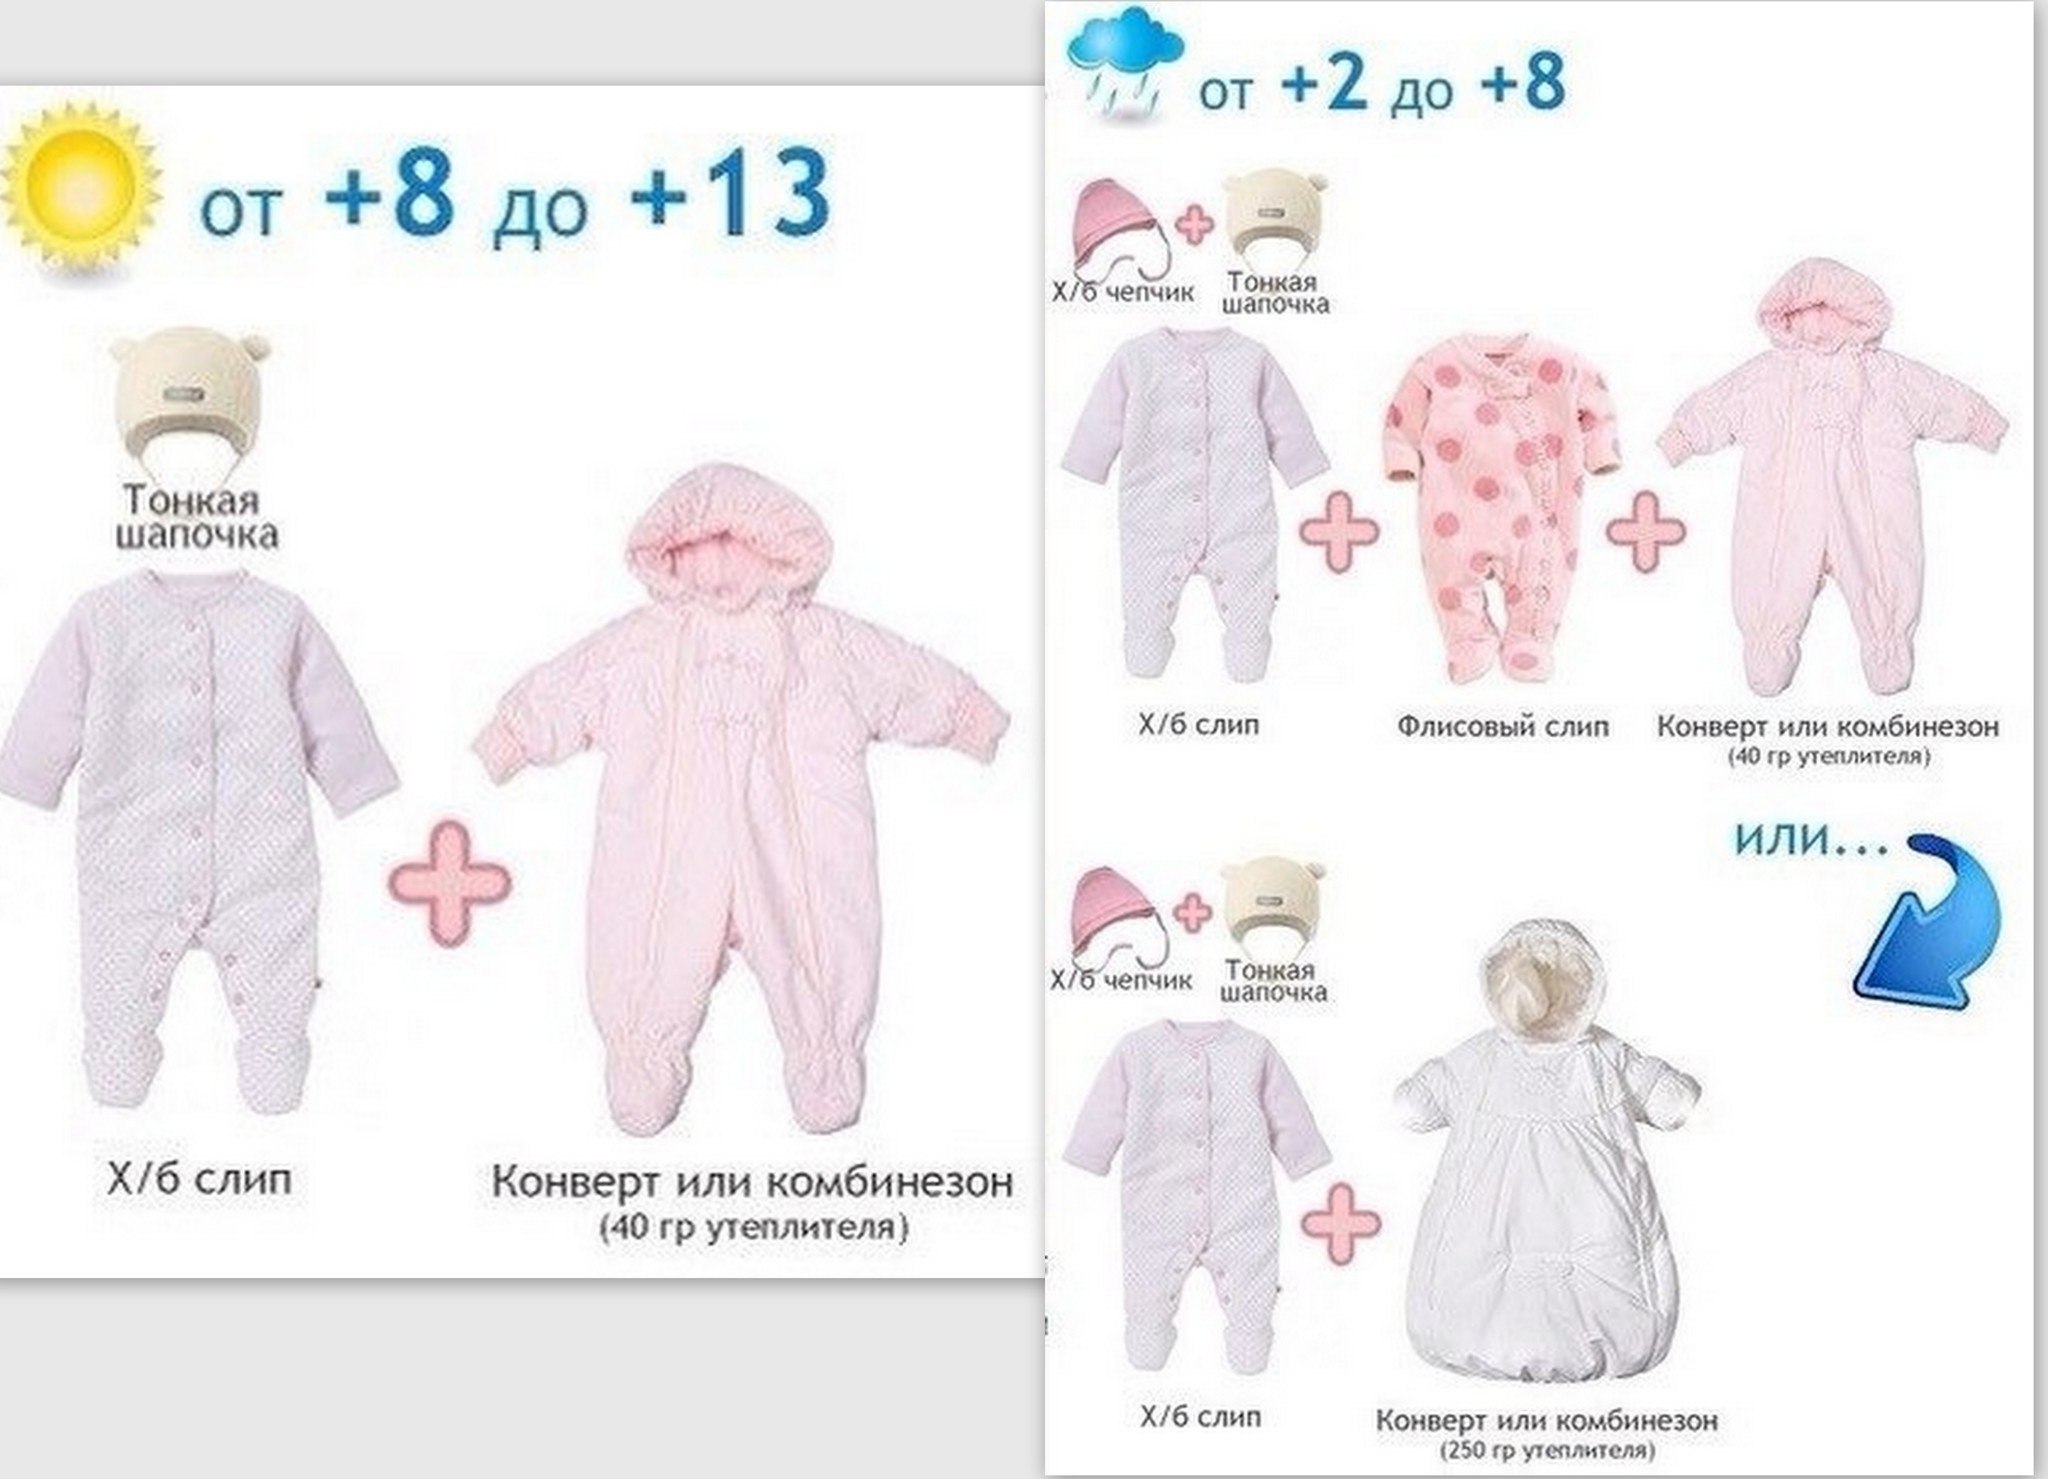 Как одевать 5 месячного ребенка. Как одеть грудничка в +10 +15. 8 Градусов как одеть грудничка. Как одеть ребенка. Одежда для новорожденных по градусам.